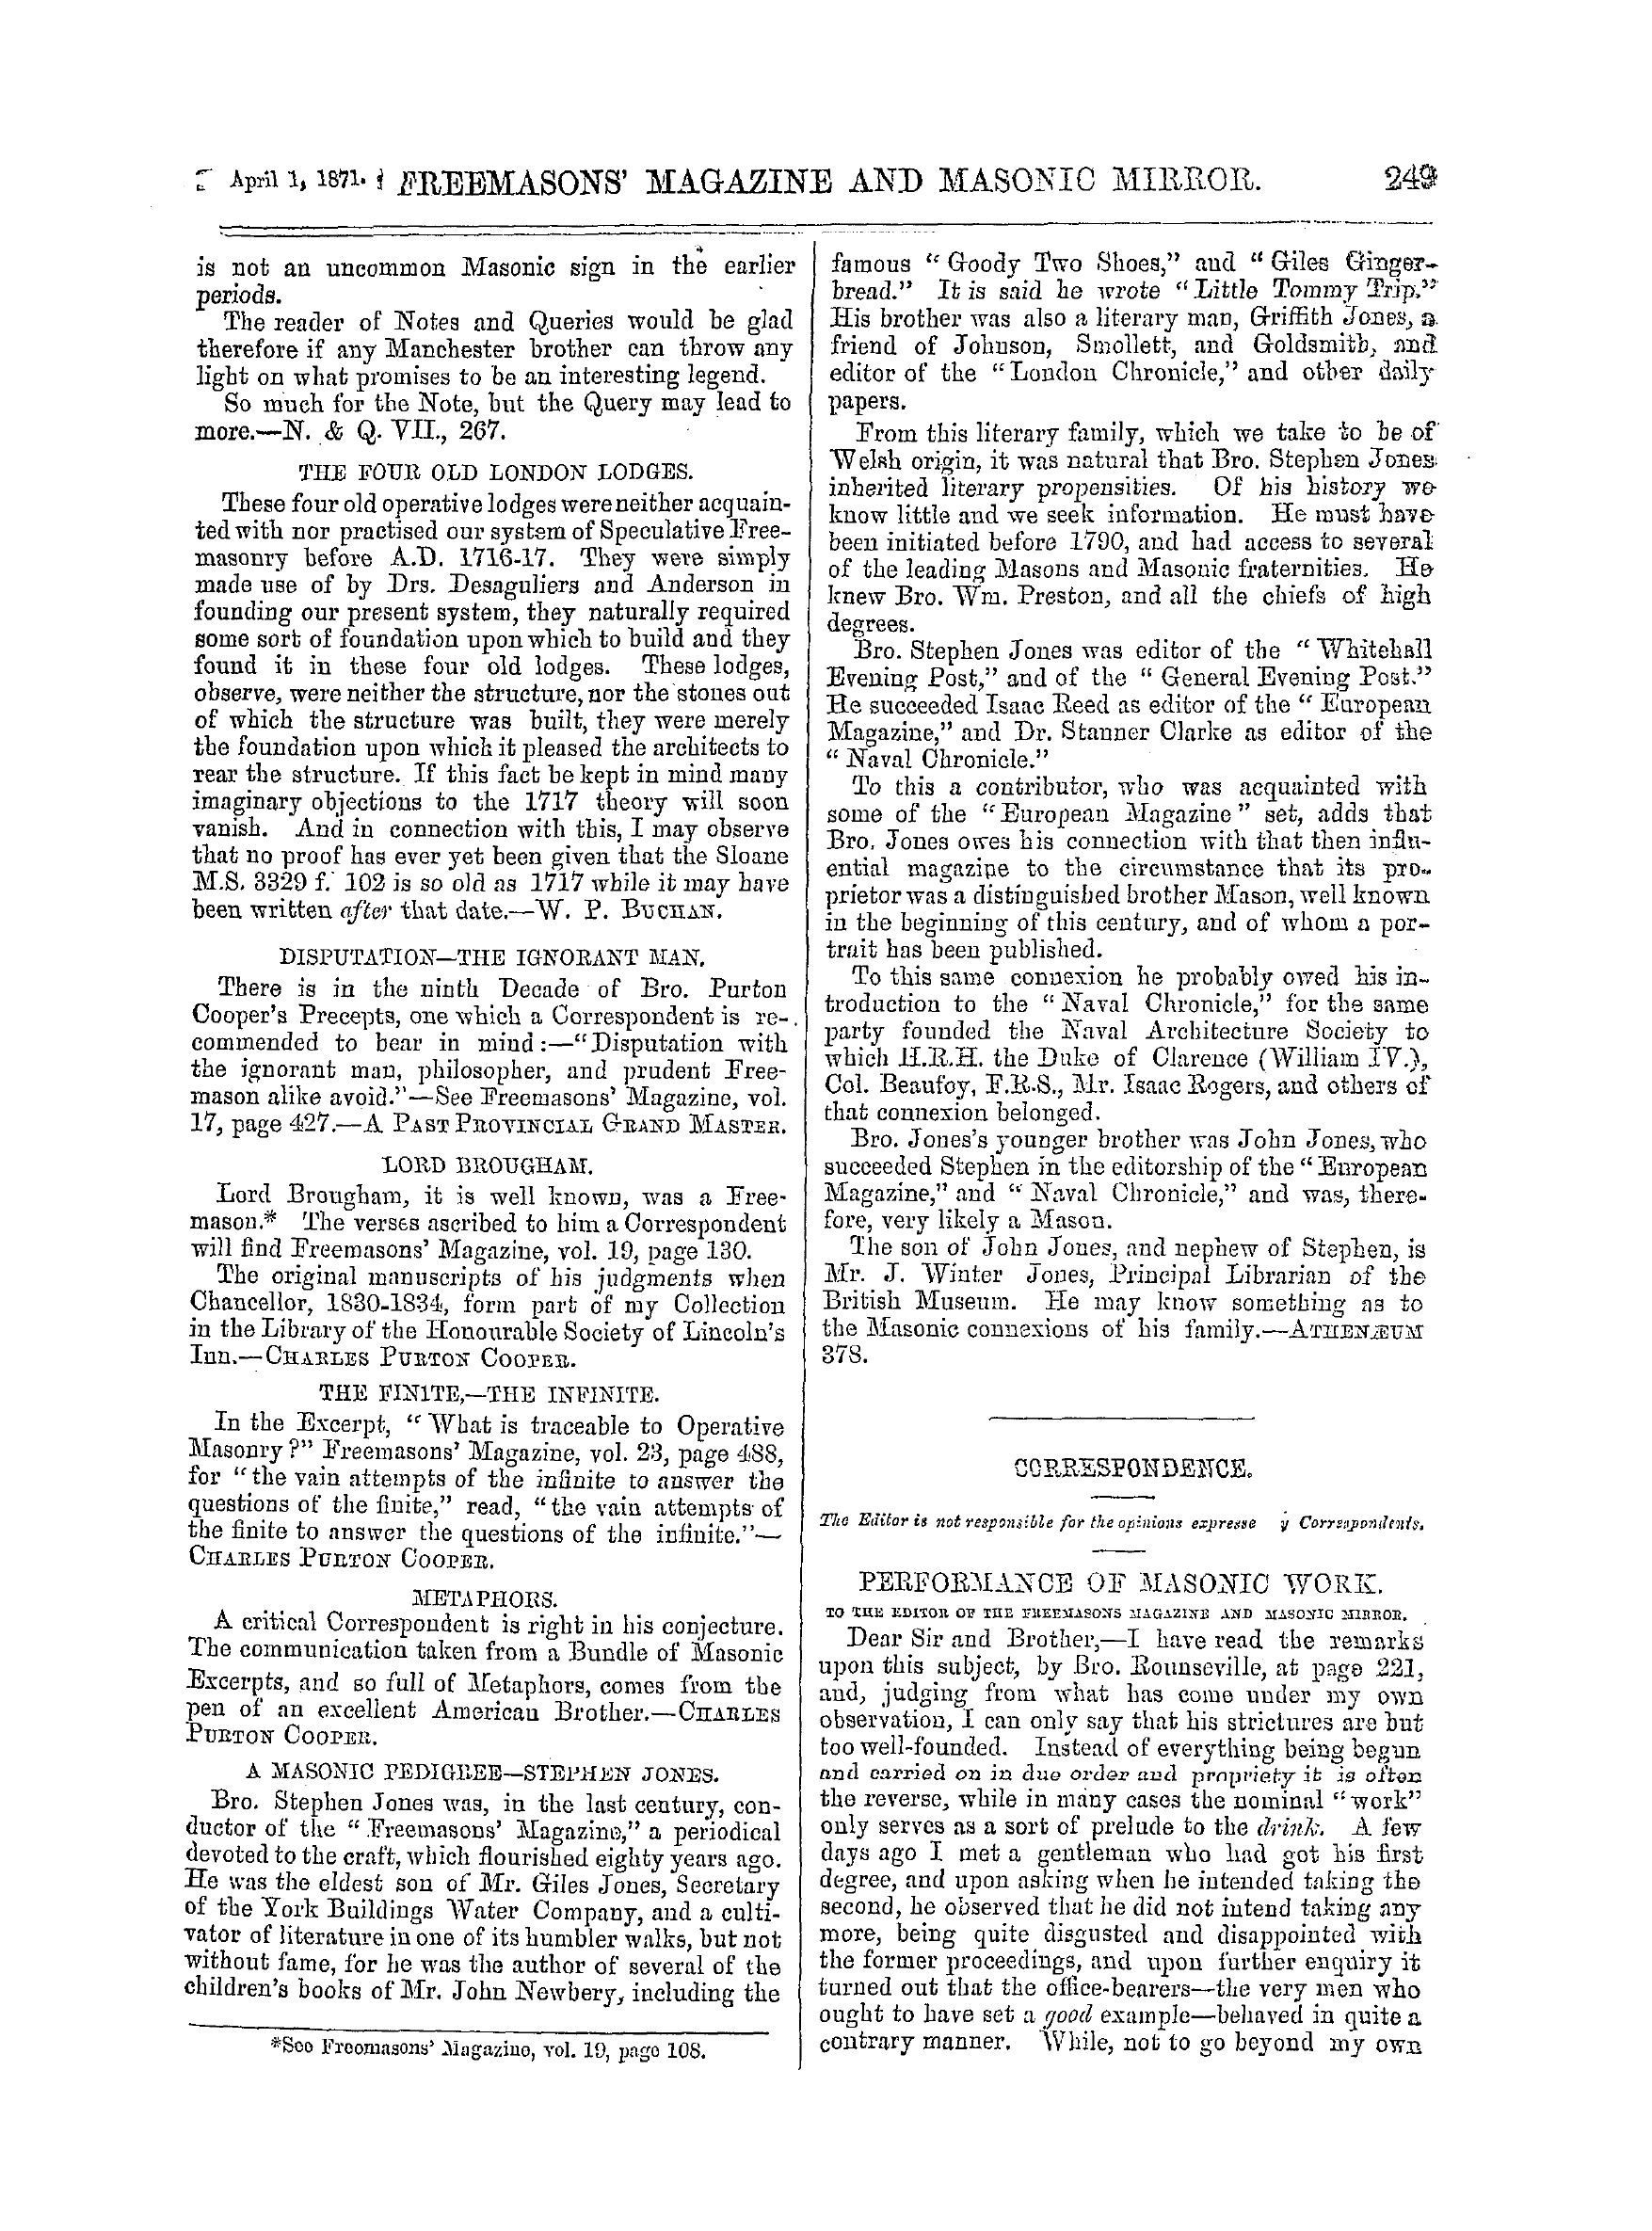 The Freemasons' Monthly Magazine: 1871-04-01: 9